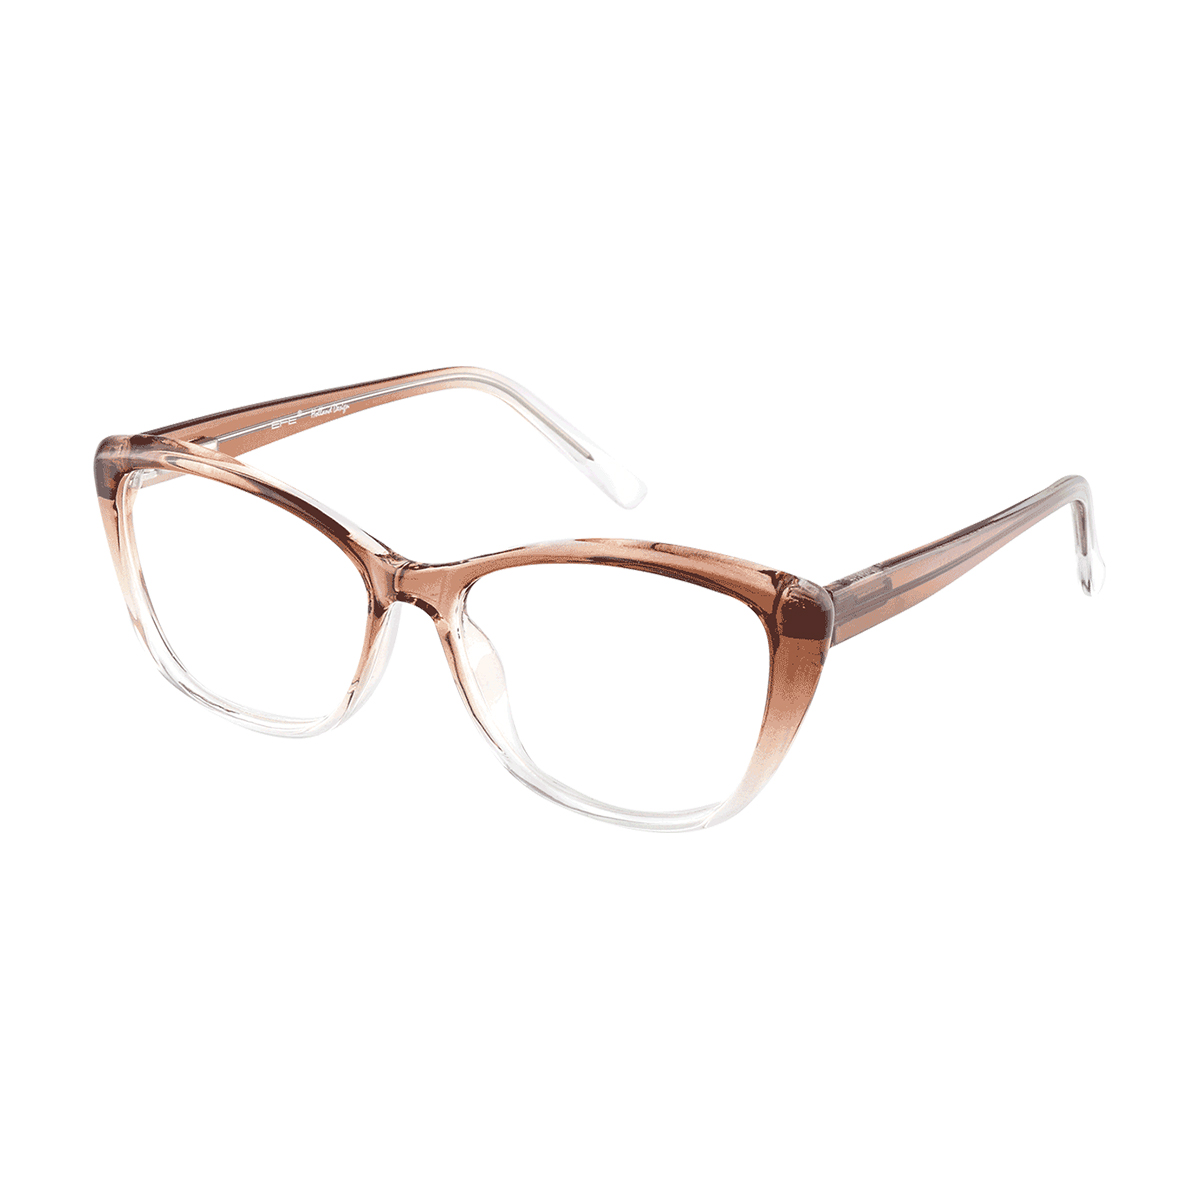 Salona - Cat-eye Amber Reading Glasses for Women